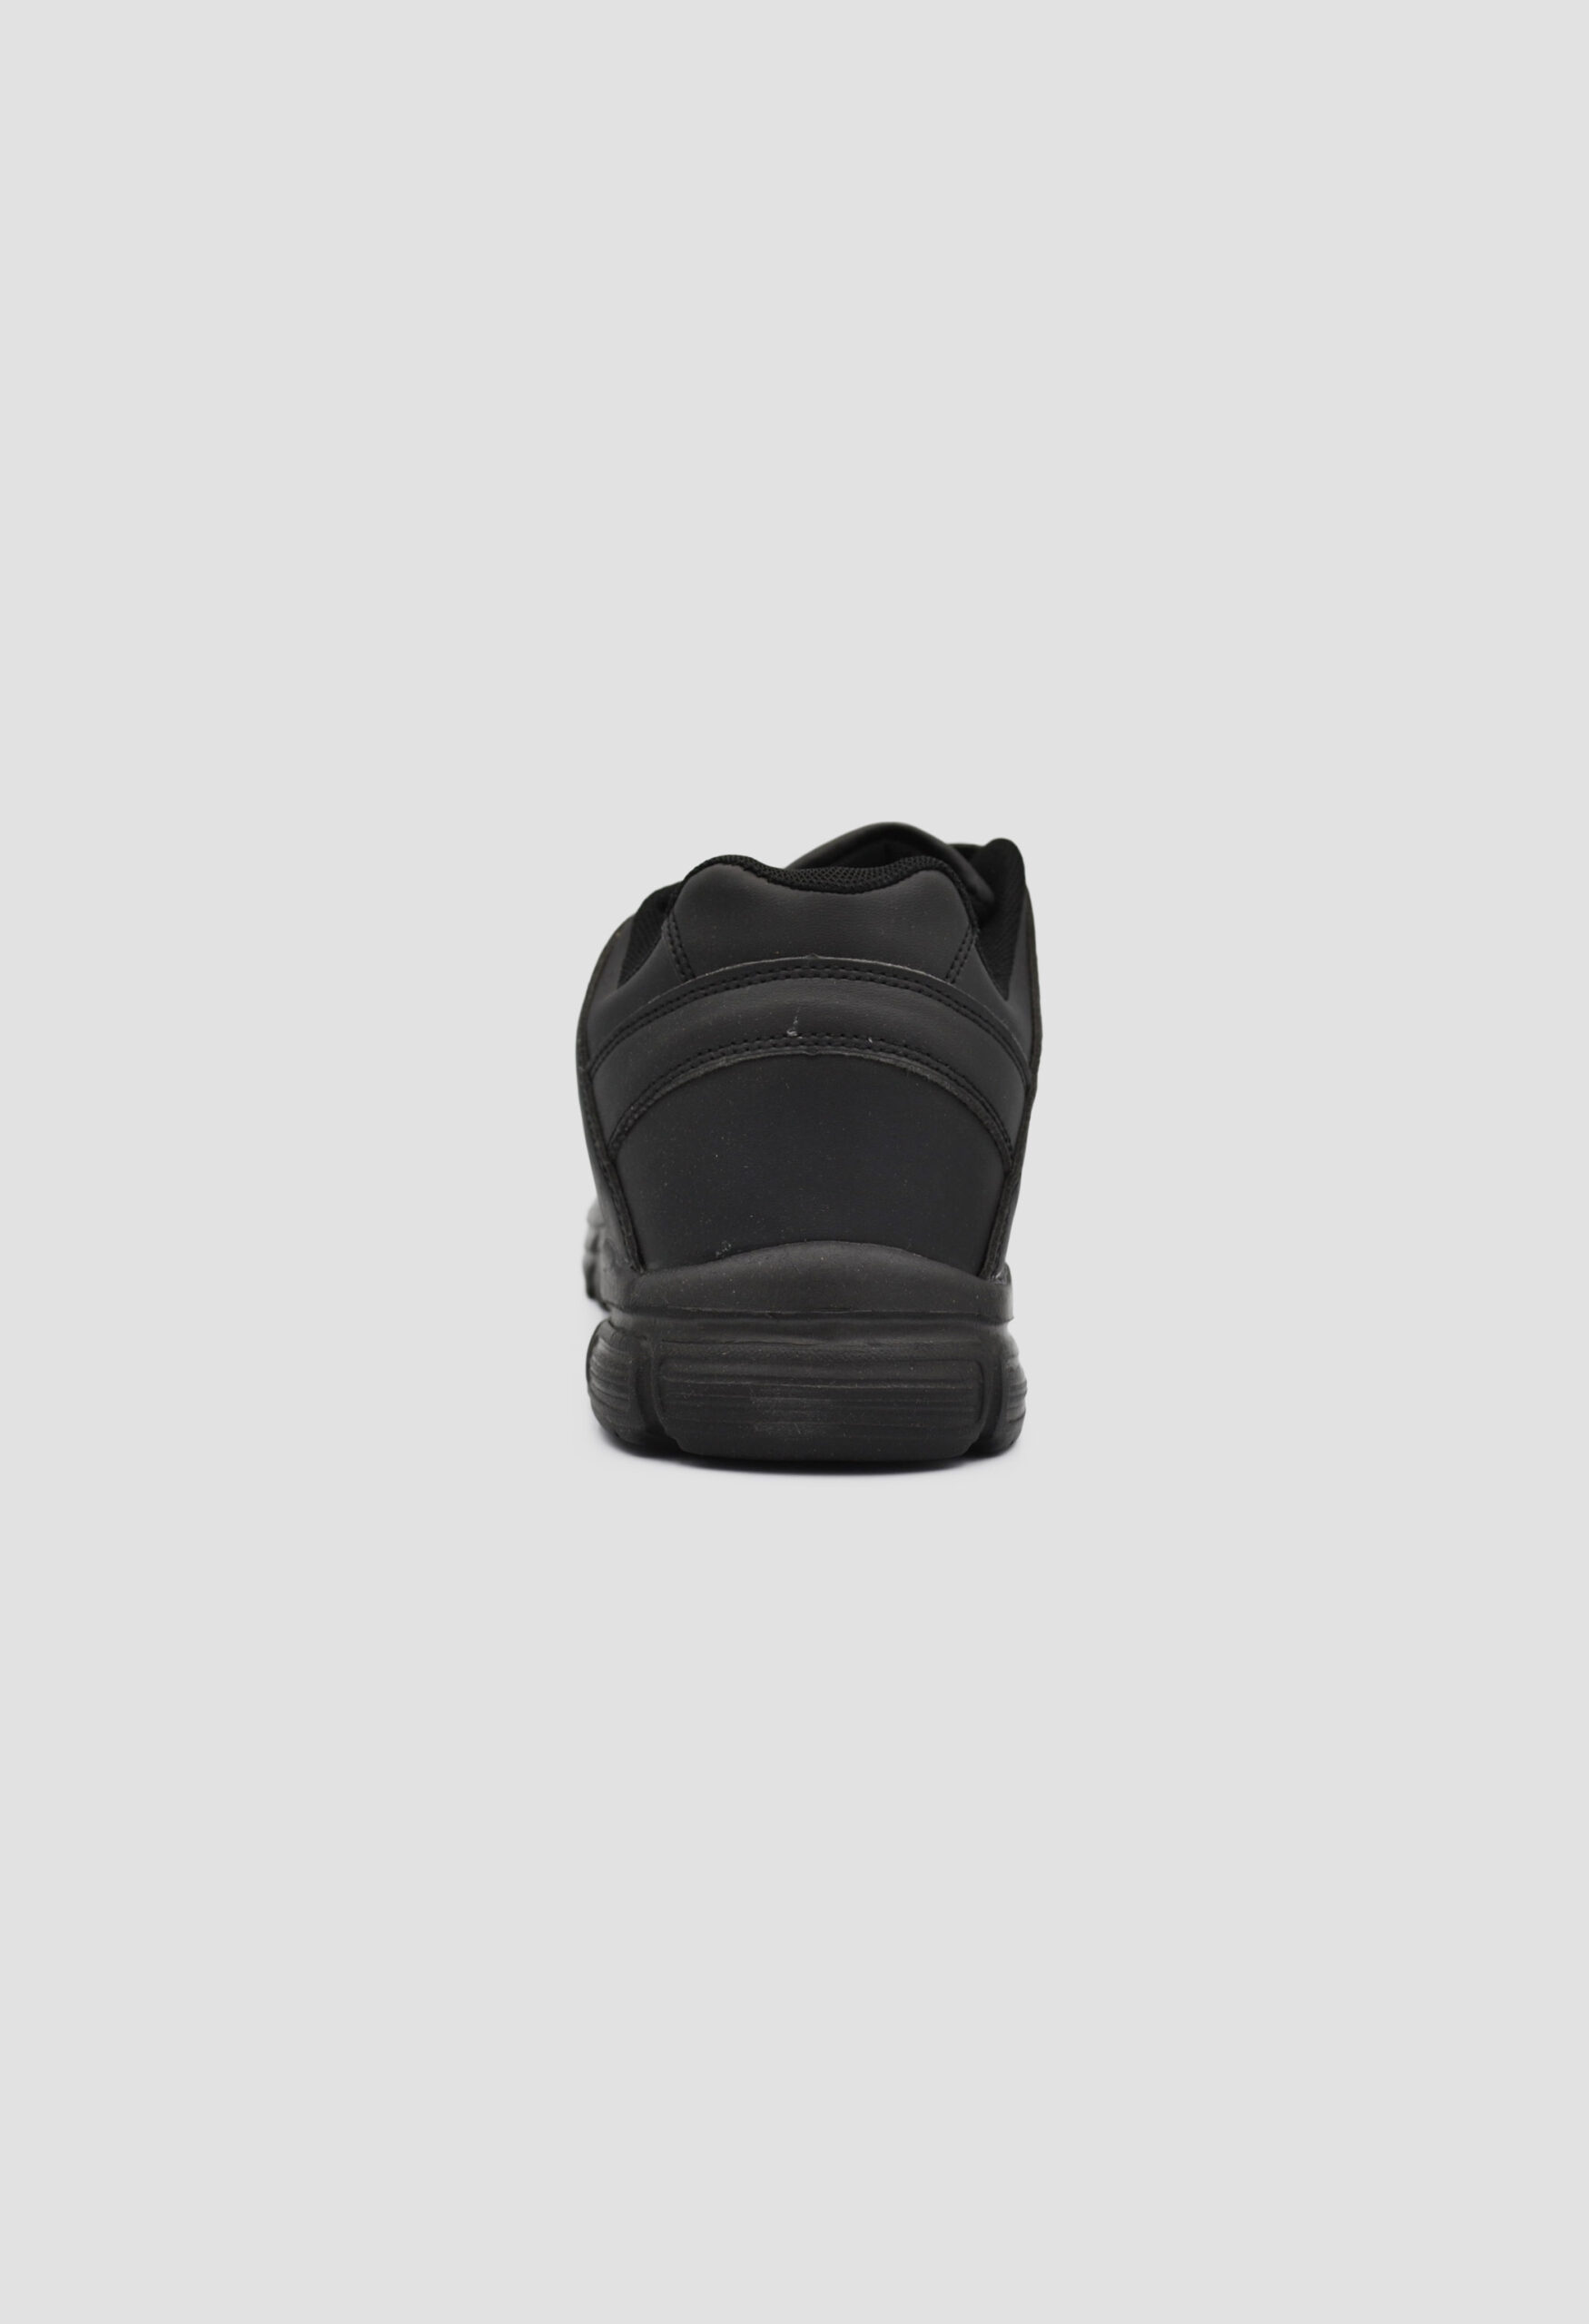 Γυναικεία Αθλητικά Παπούτσια για Τρέξιμο Μαύρο / B202122-black Γυναικεία Αθλητικά και Sneakers joya.gr